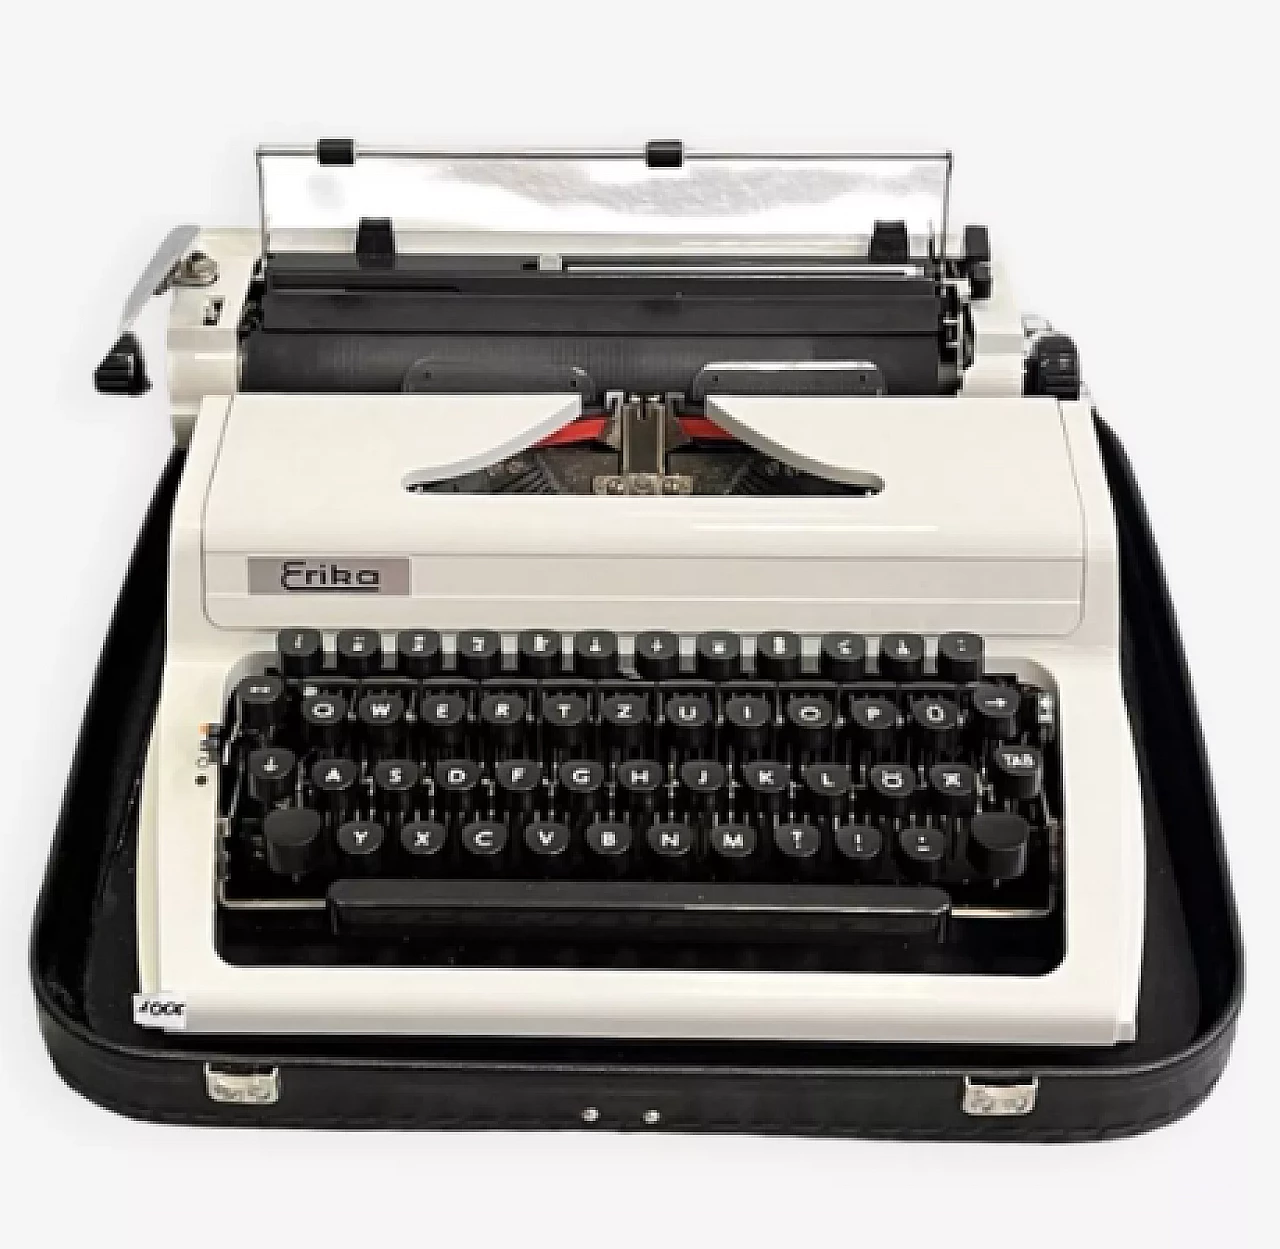 Erika 105 typewriter by VEB Robotron Rechen-und-Schreibtechnik Dresden, 1976 1